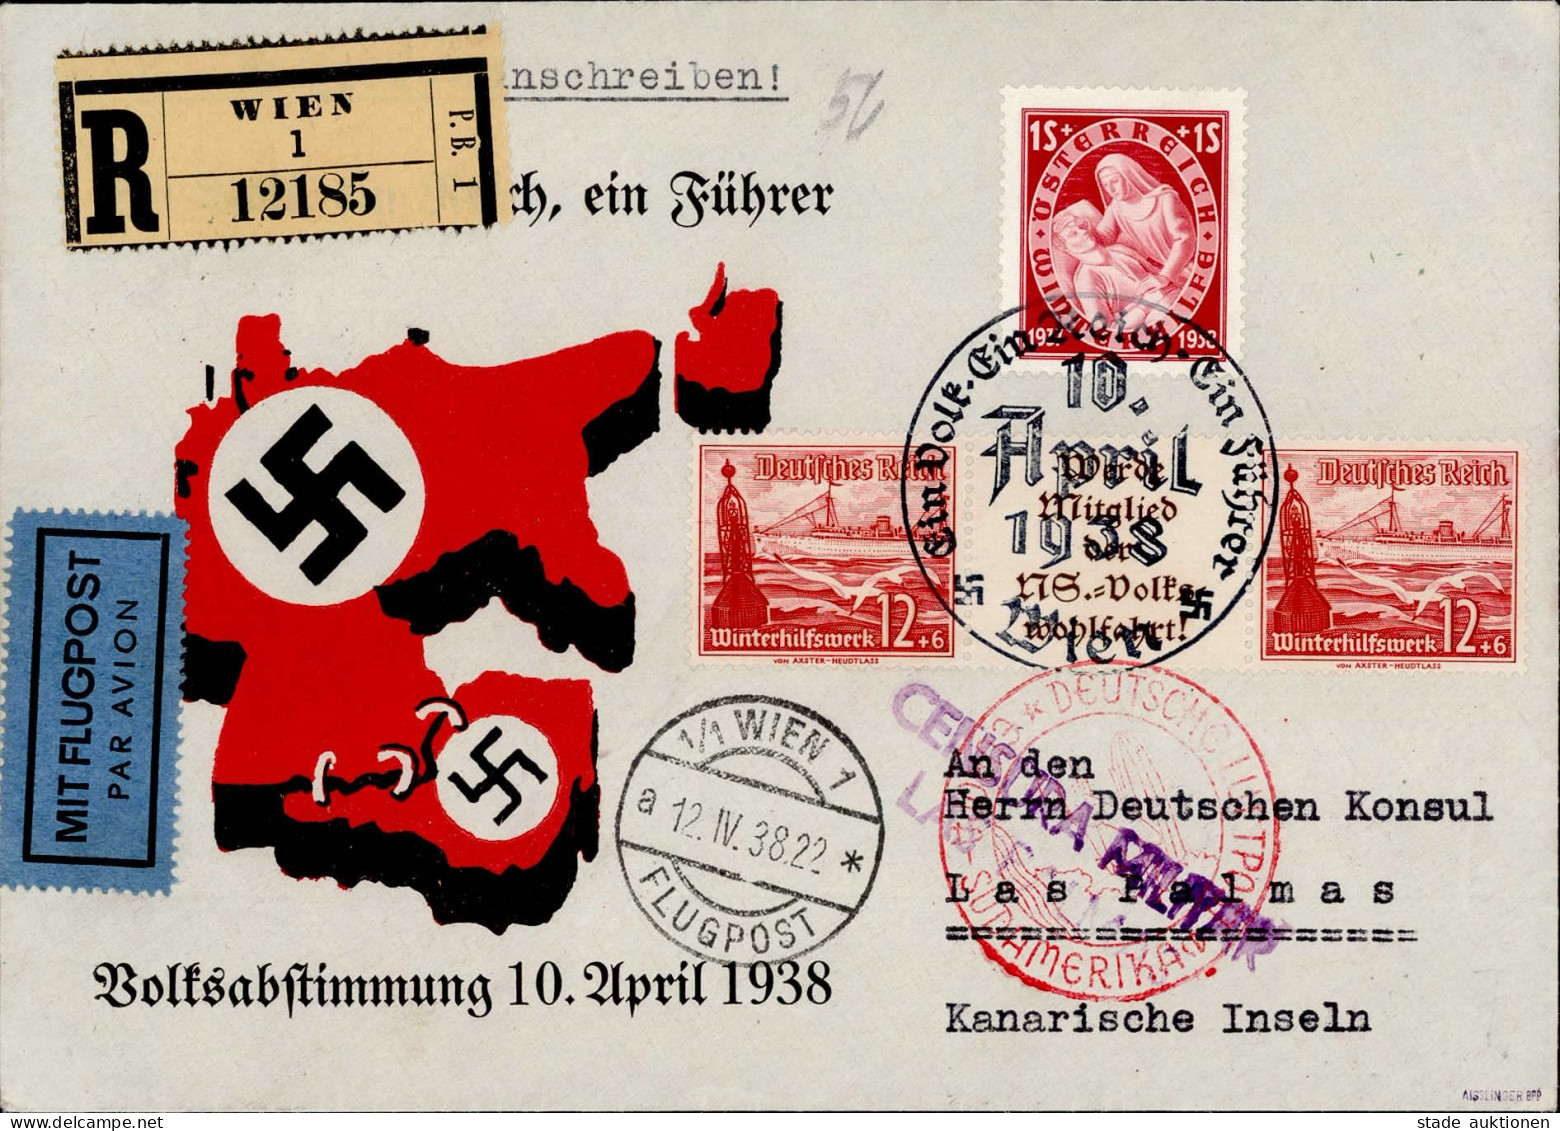 Ostmark (Österreich) Volksabstimmung 10. April 1938 Luftpost Nach Gran Canaria Mischfrankatur 3.Reich WHW/Österreich, Ze - War 1939-45